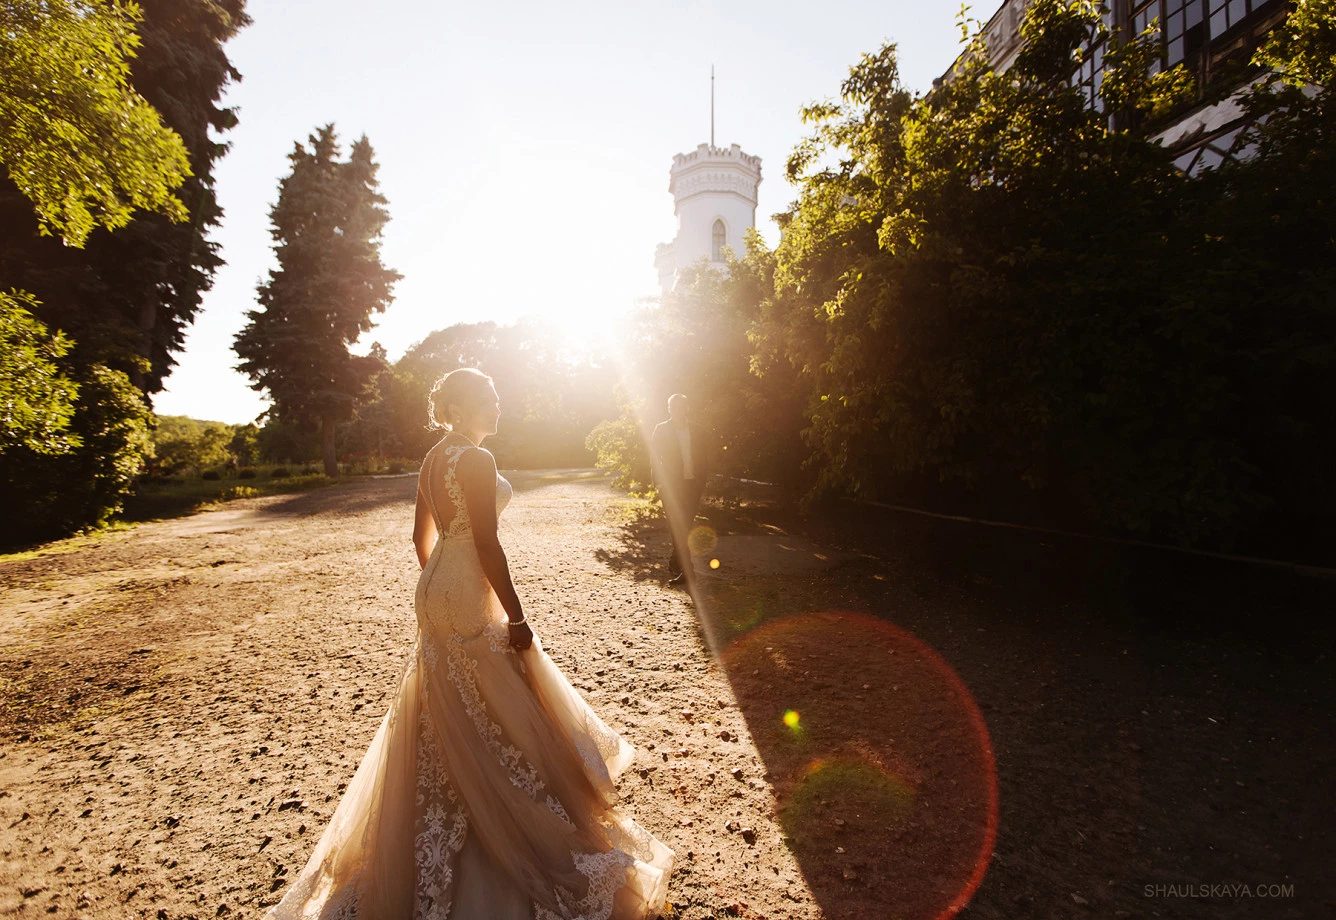 zdjęcia lublin fotograf fotograf-anna-shaulskaya portfolio zdjecia slubne inspiracje wesele plener slubny